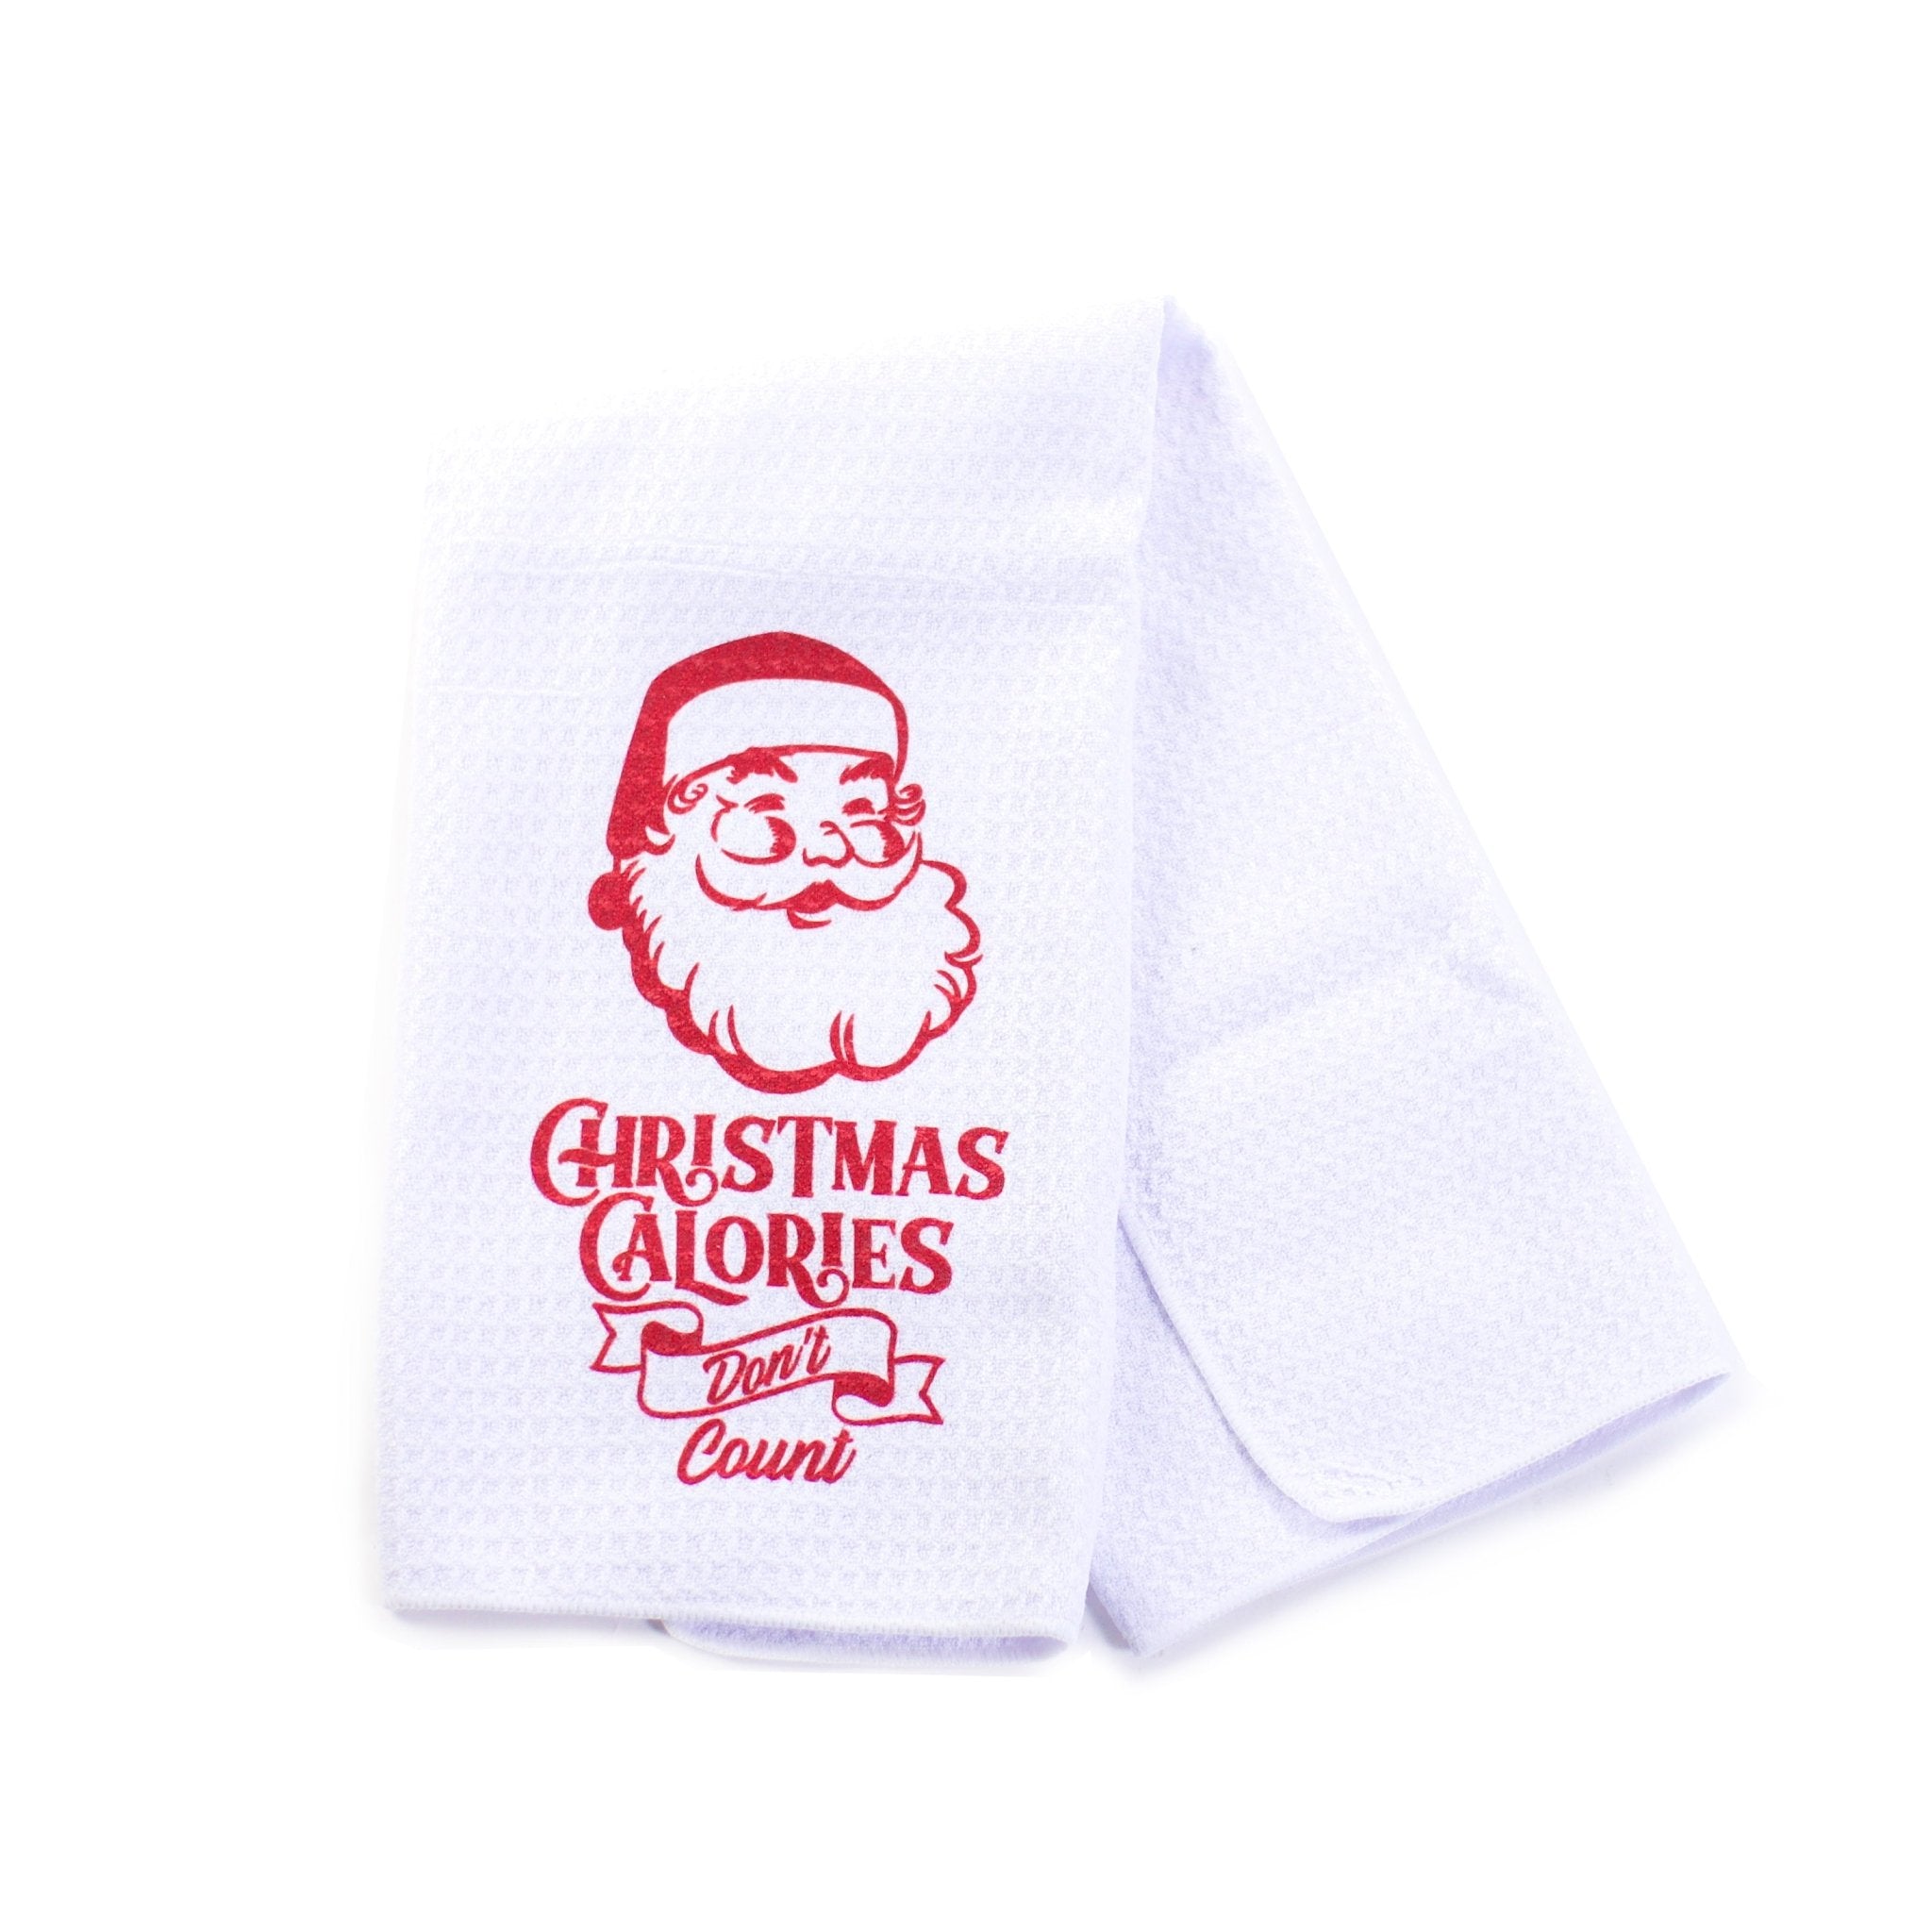 Kitchen Towel Christmas Calorie dont count - MODA FLORA Santa's Workshop